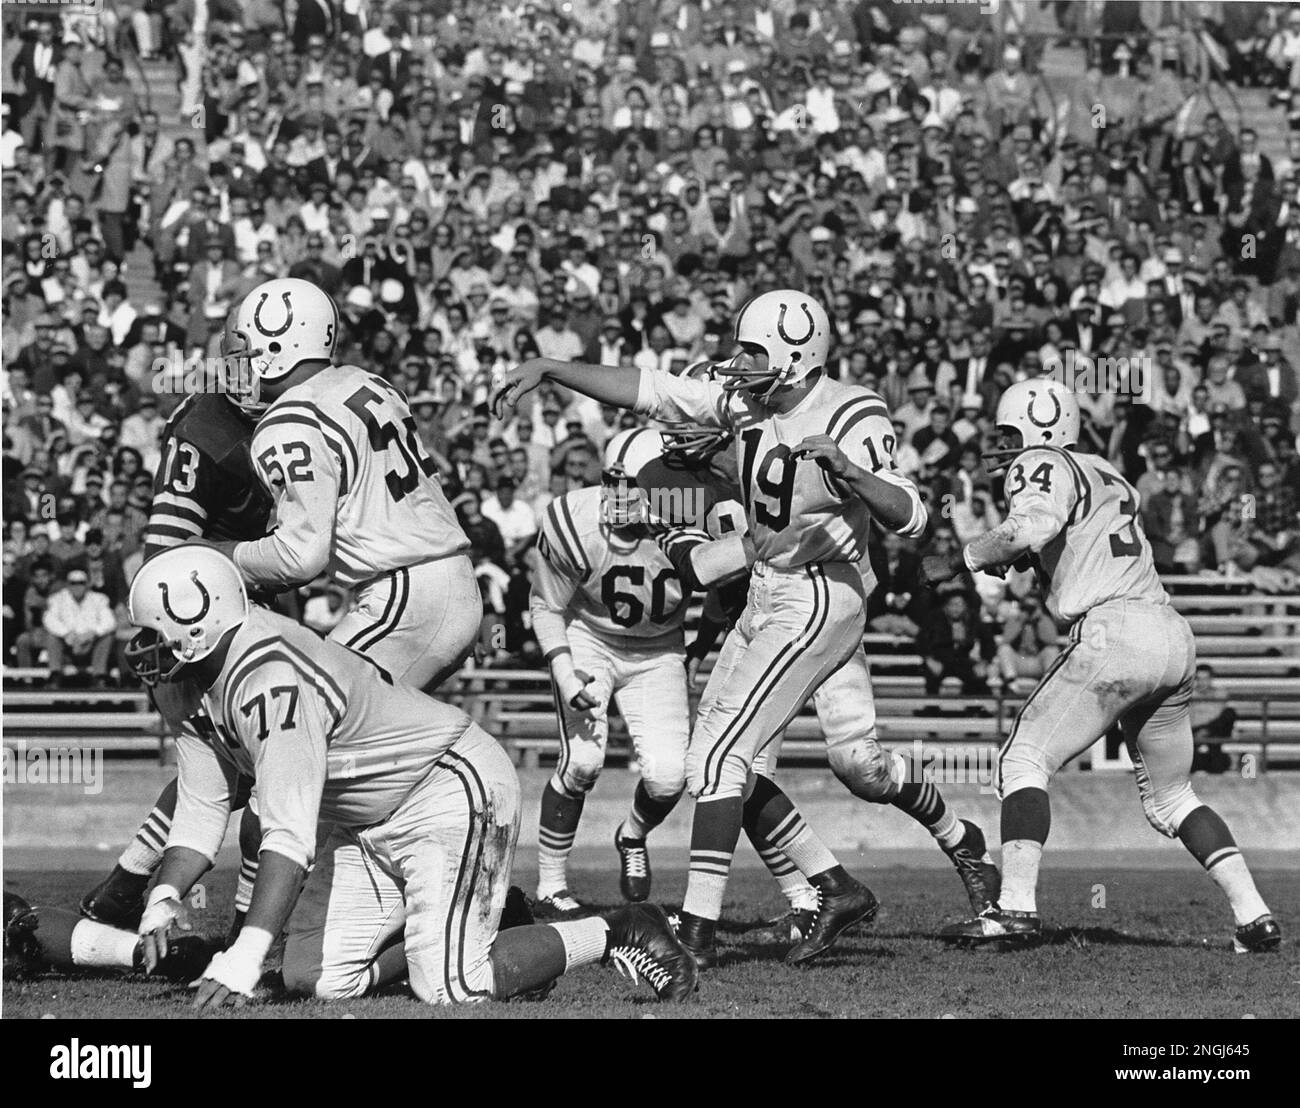 Johnny Unitas (19), quarterback of the Baltimore Colts, throws a